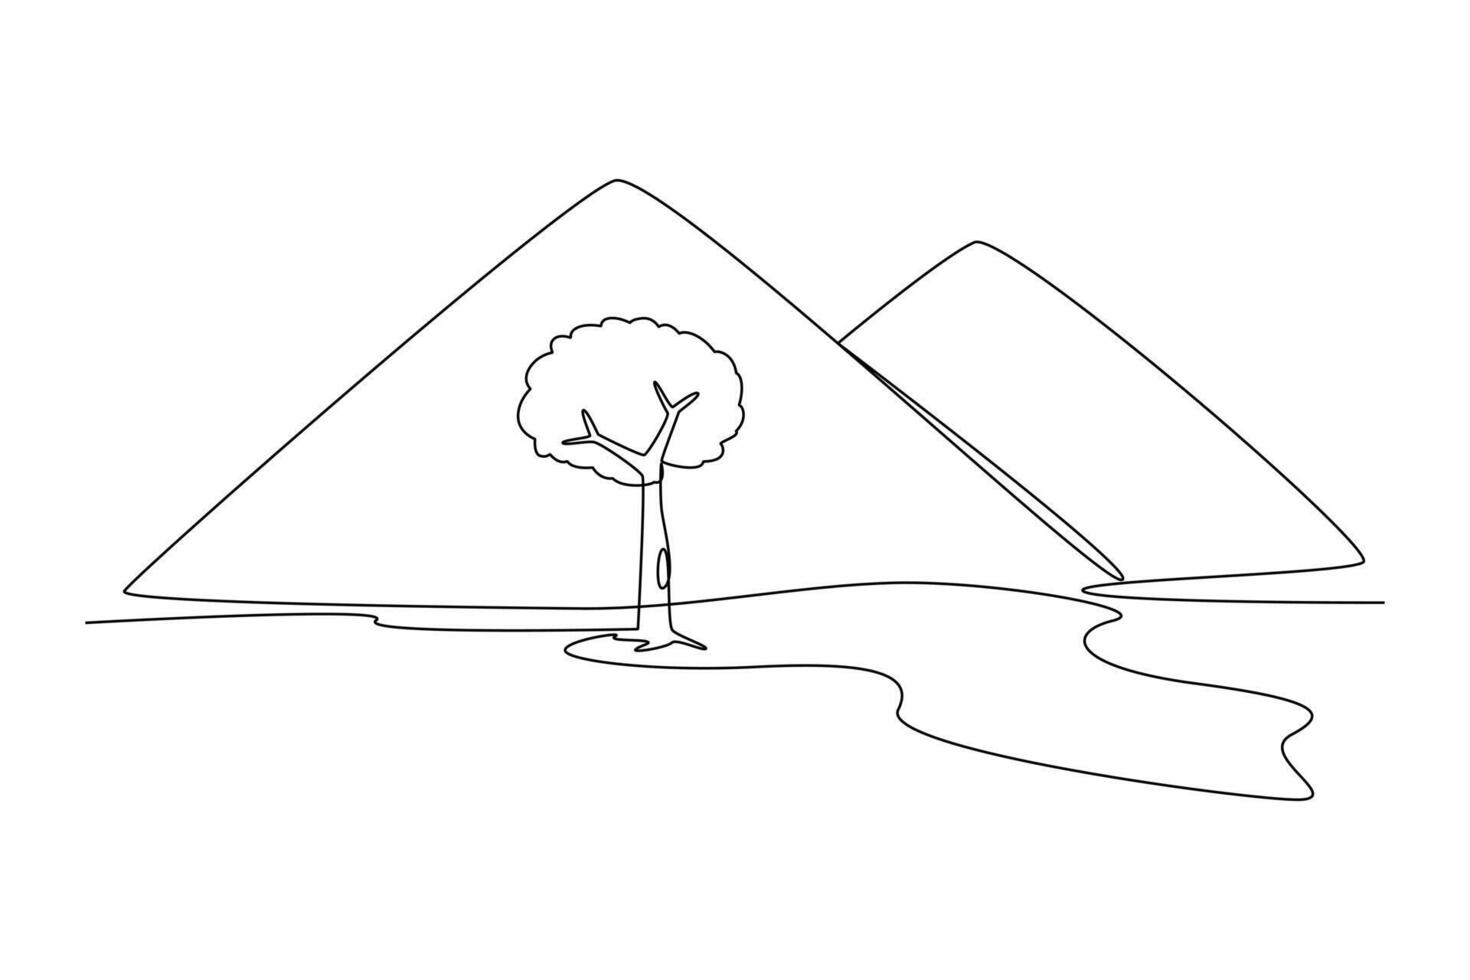 uno continuo línea dibujo de paisaje con verde césped, árboles, cielo horizonte y montañas. naturaleza concepto. garabatear vector ilustración en sencillo lineal estilo.